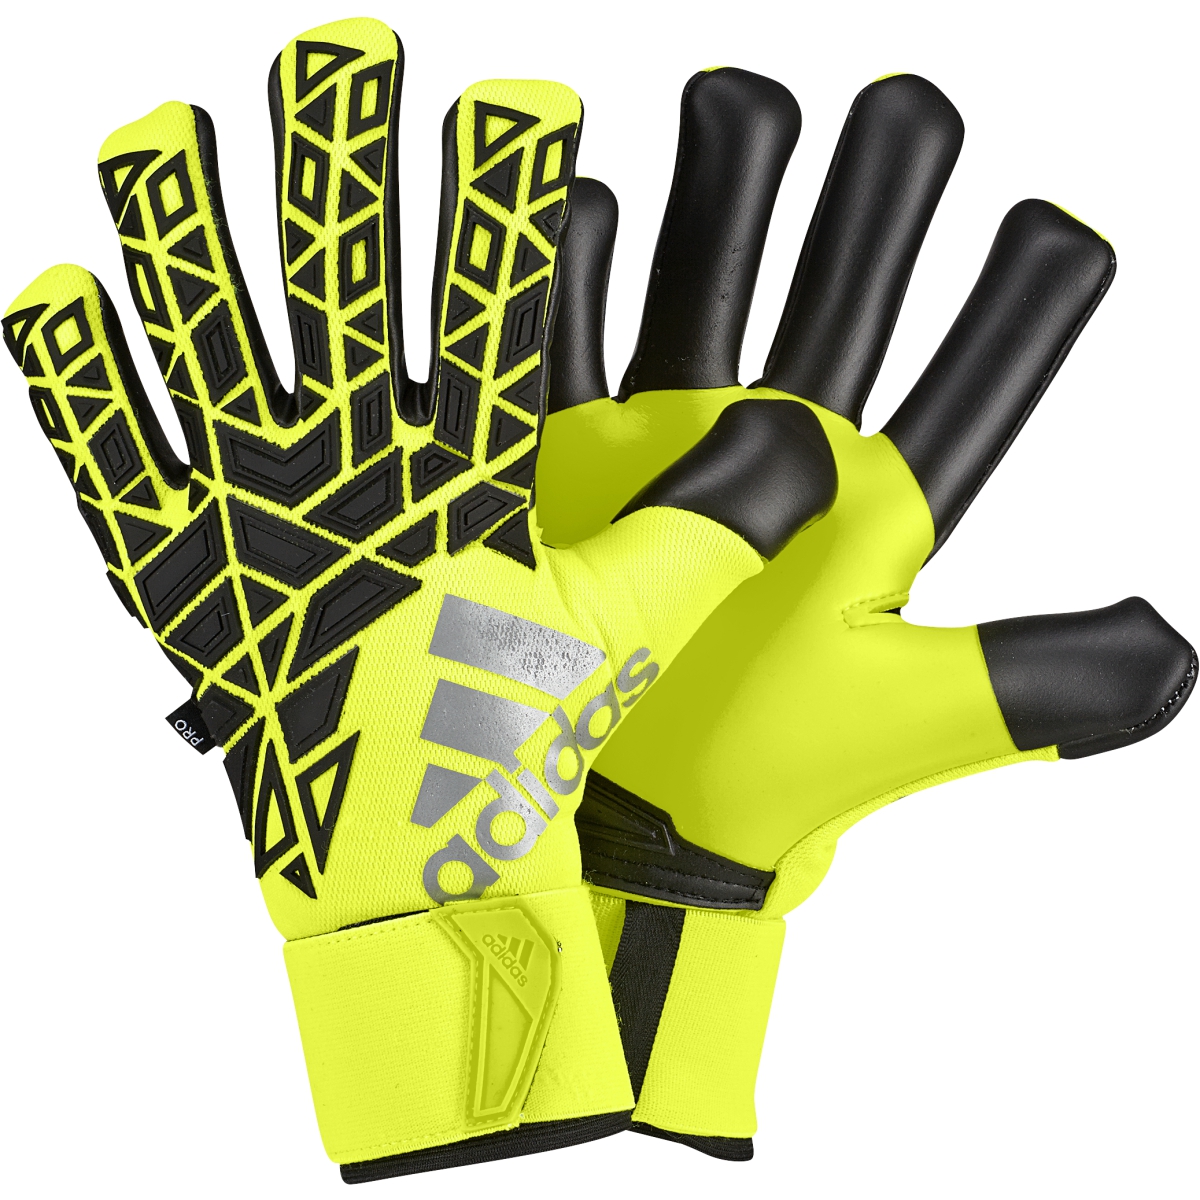 ace trans pro gloves